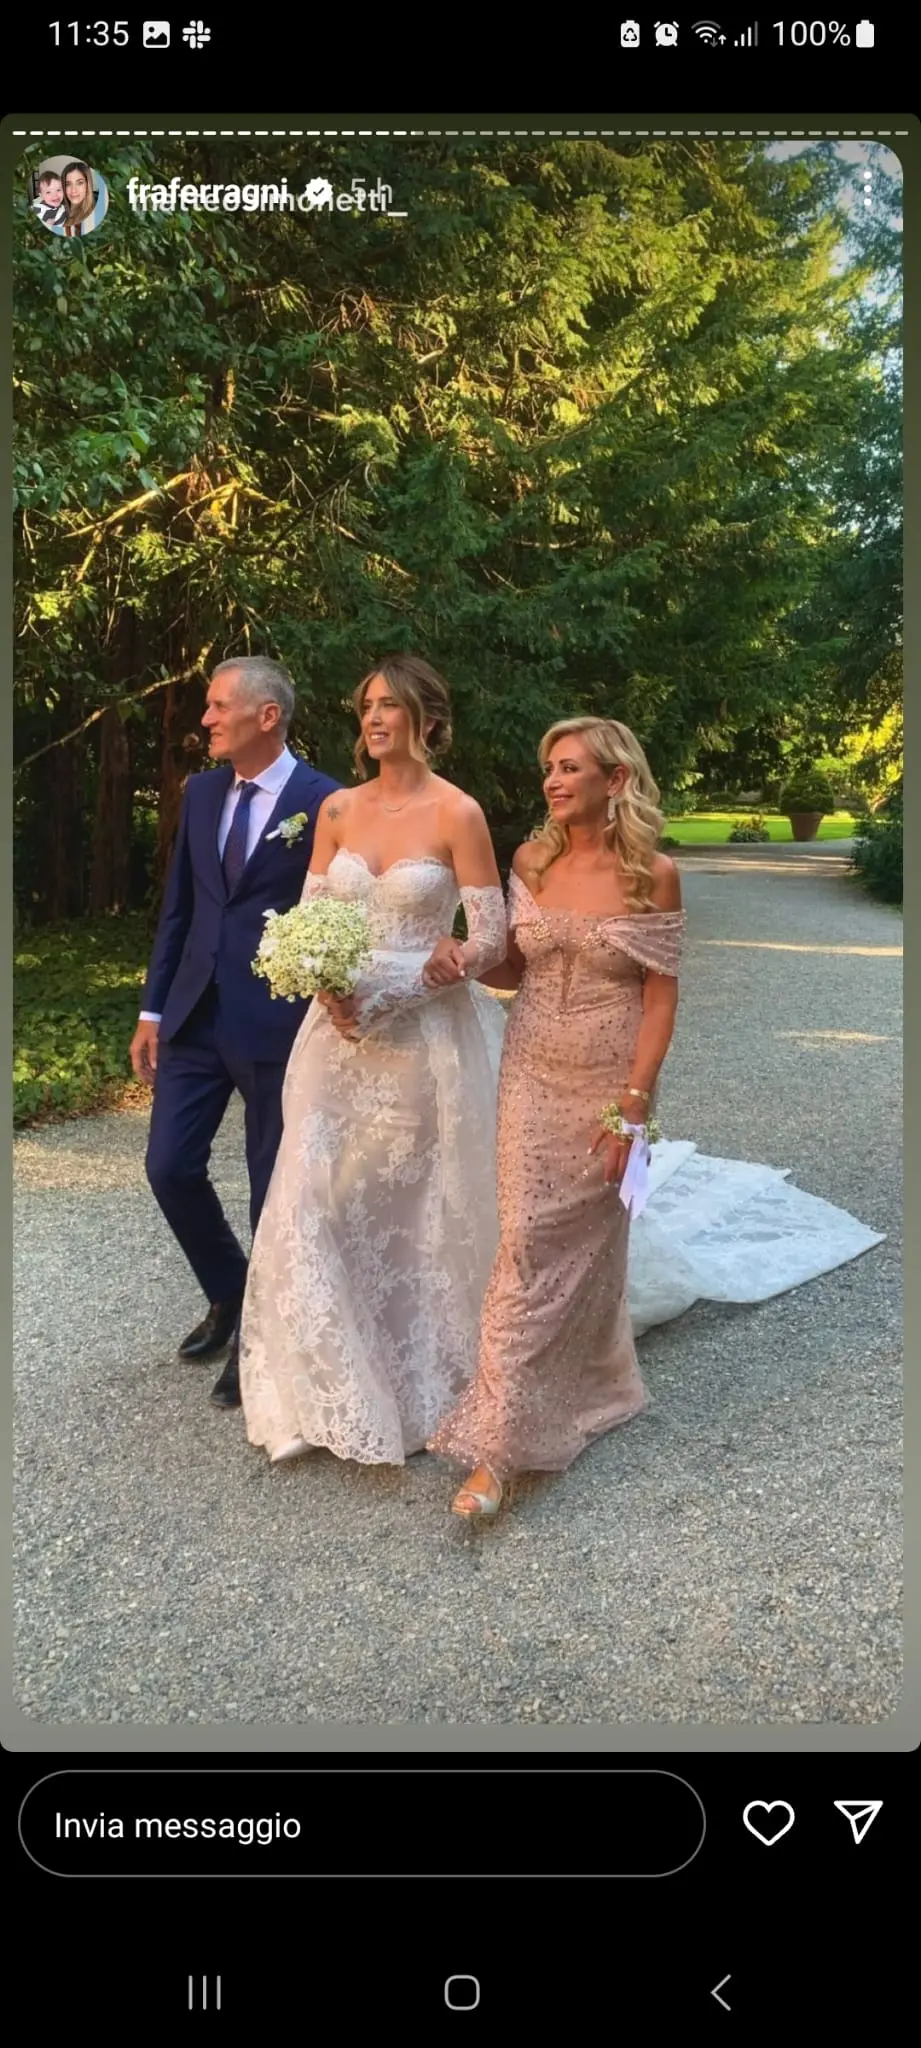 Il matrimonio di Francesca Ferragni e Riccardo Nicoletti: tutte le foto  degli abiti